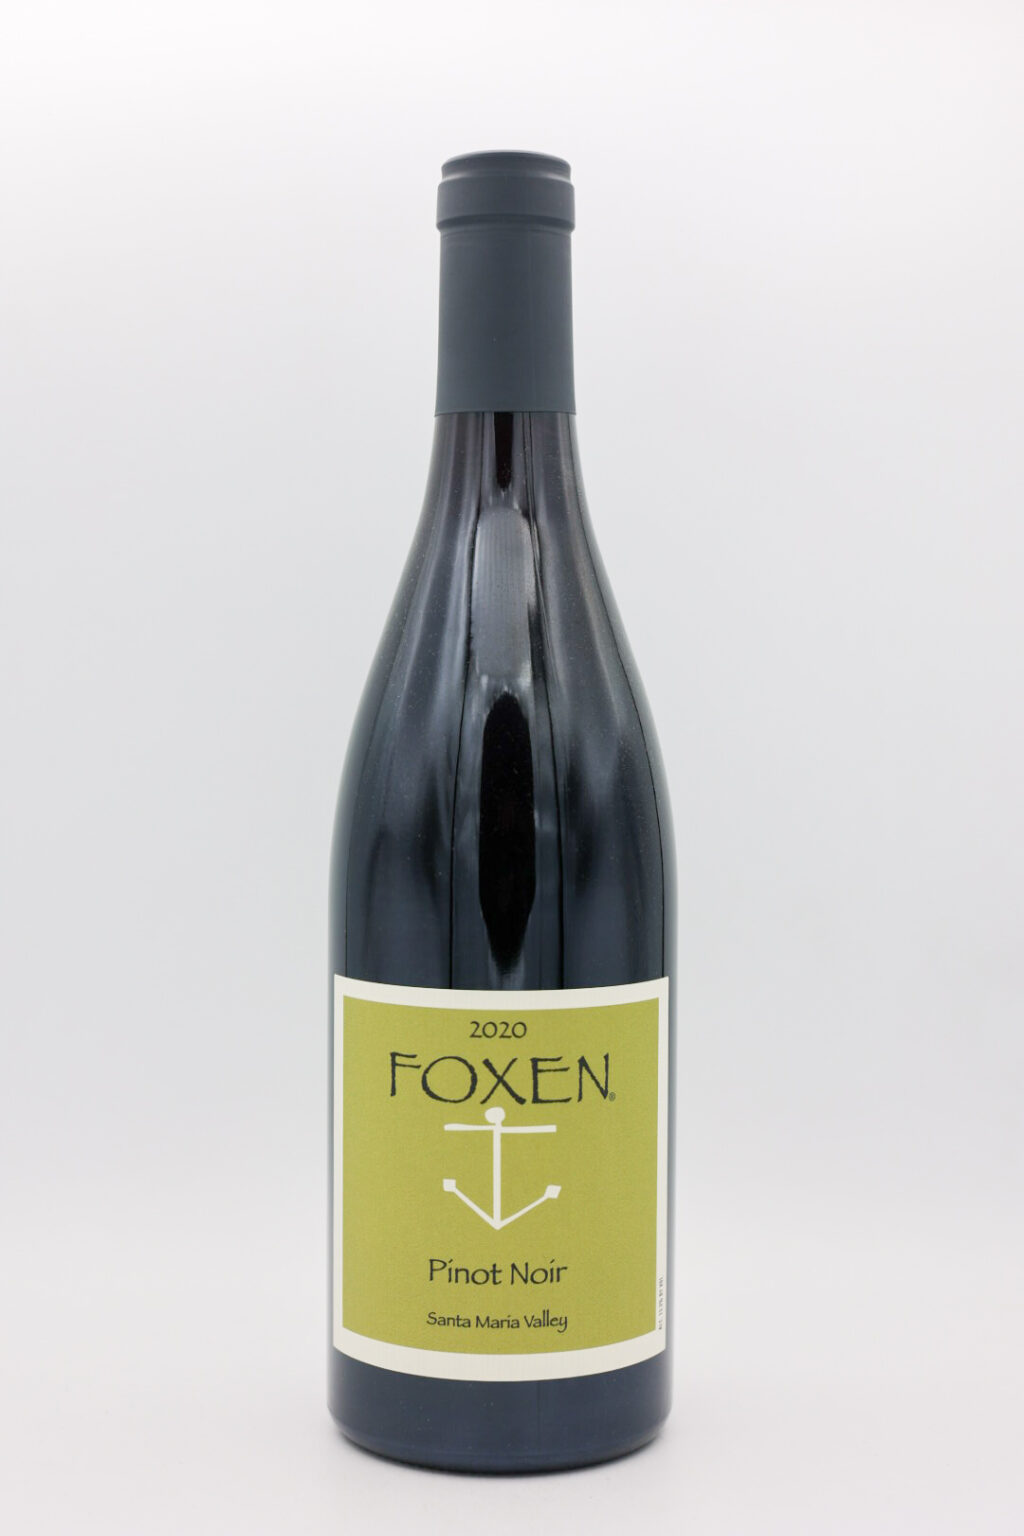 Foxen Santa Maria Valley Pinot Noir 2020